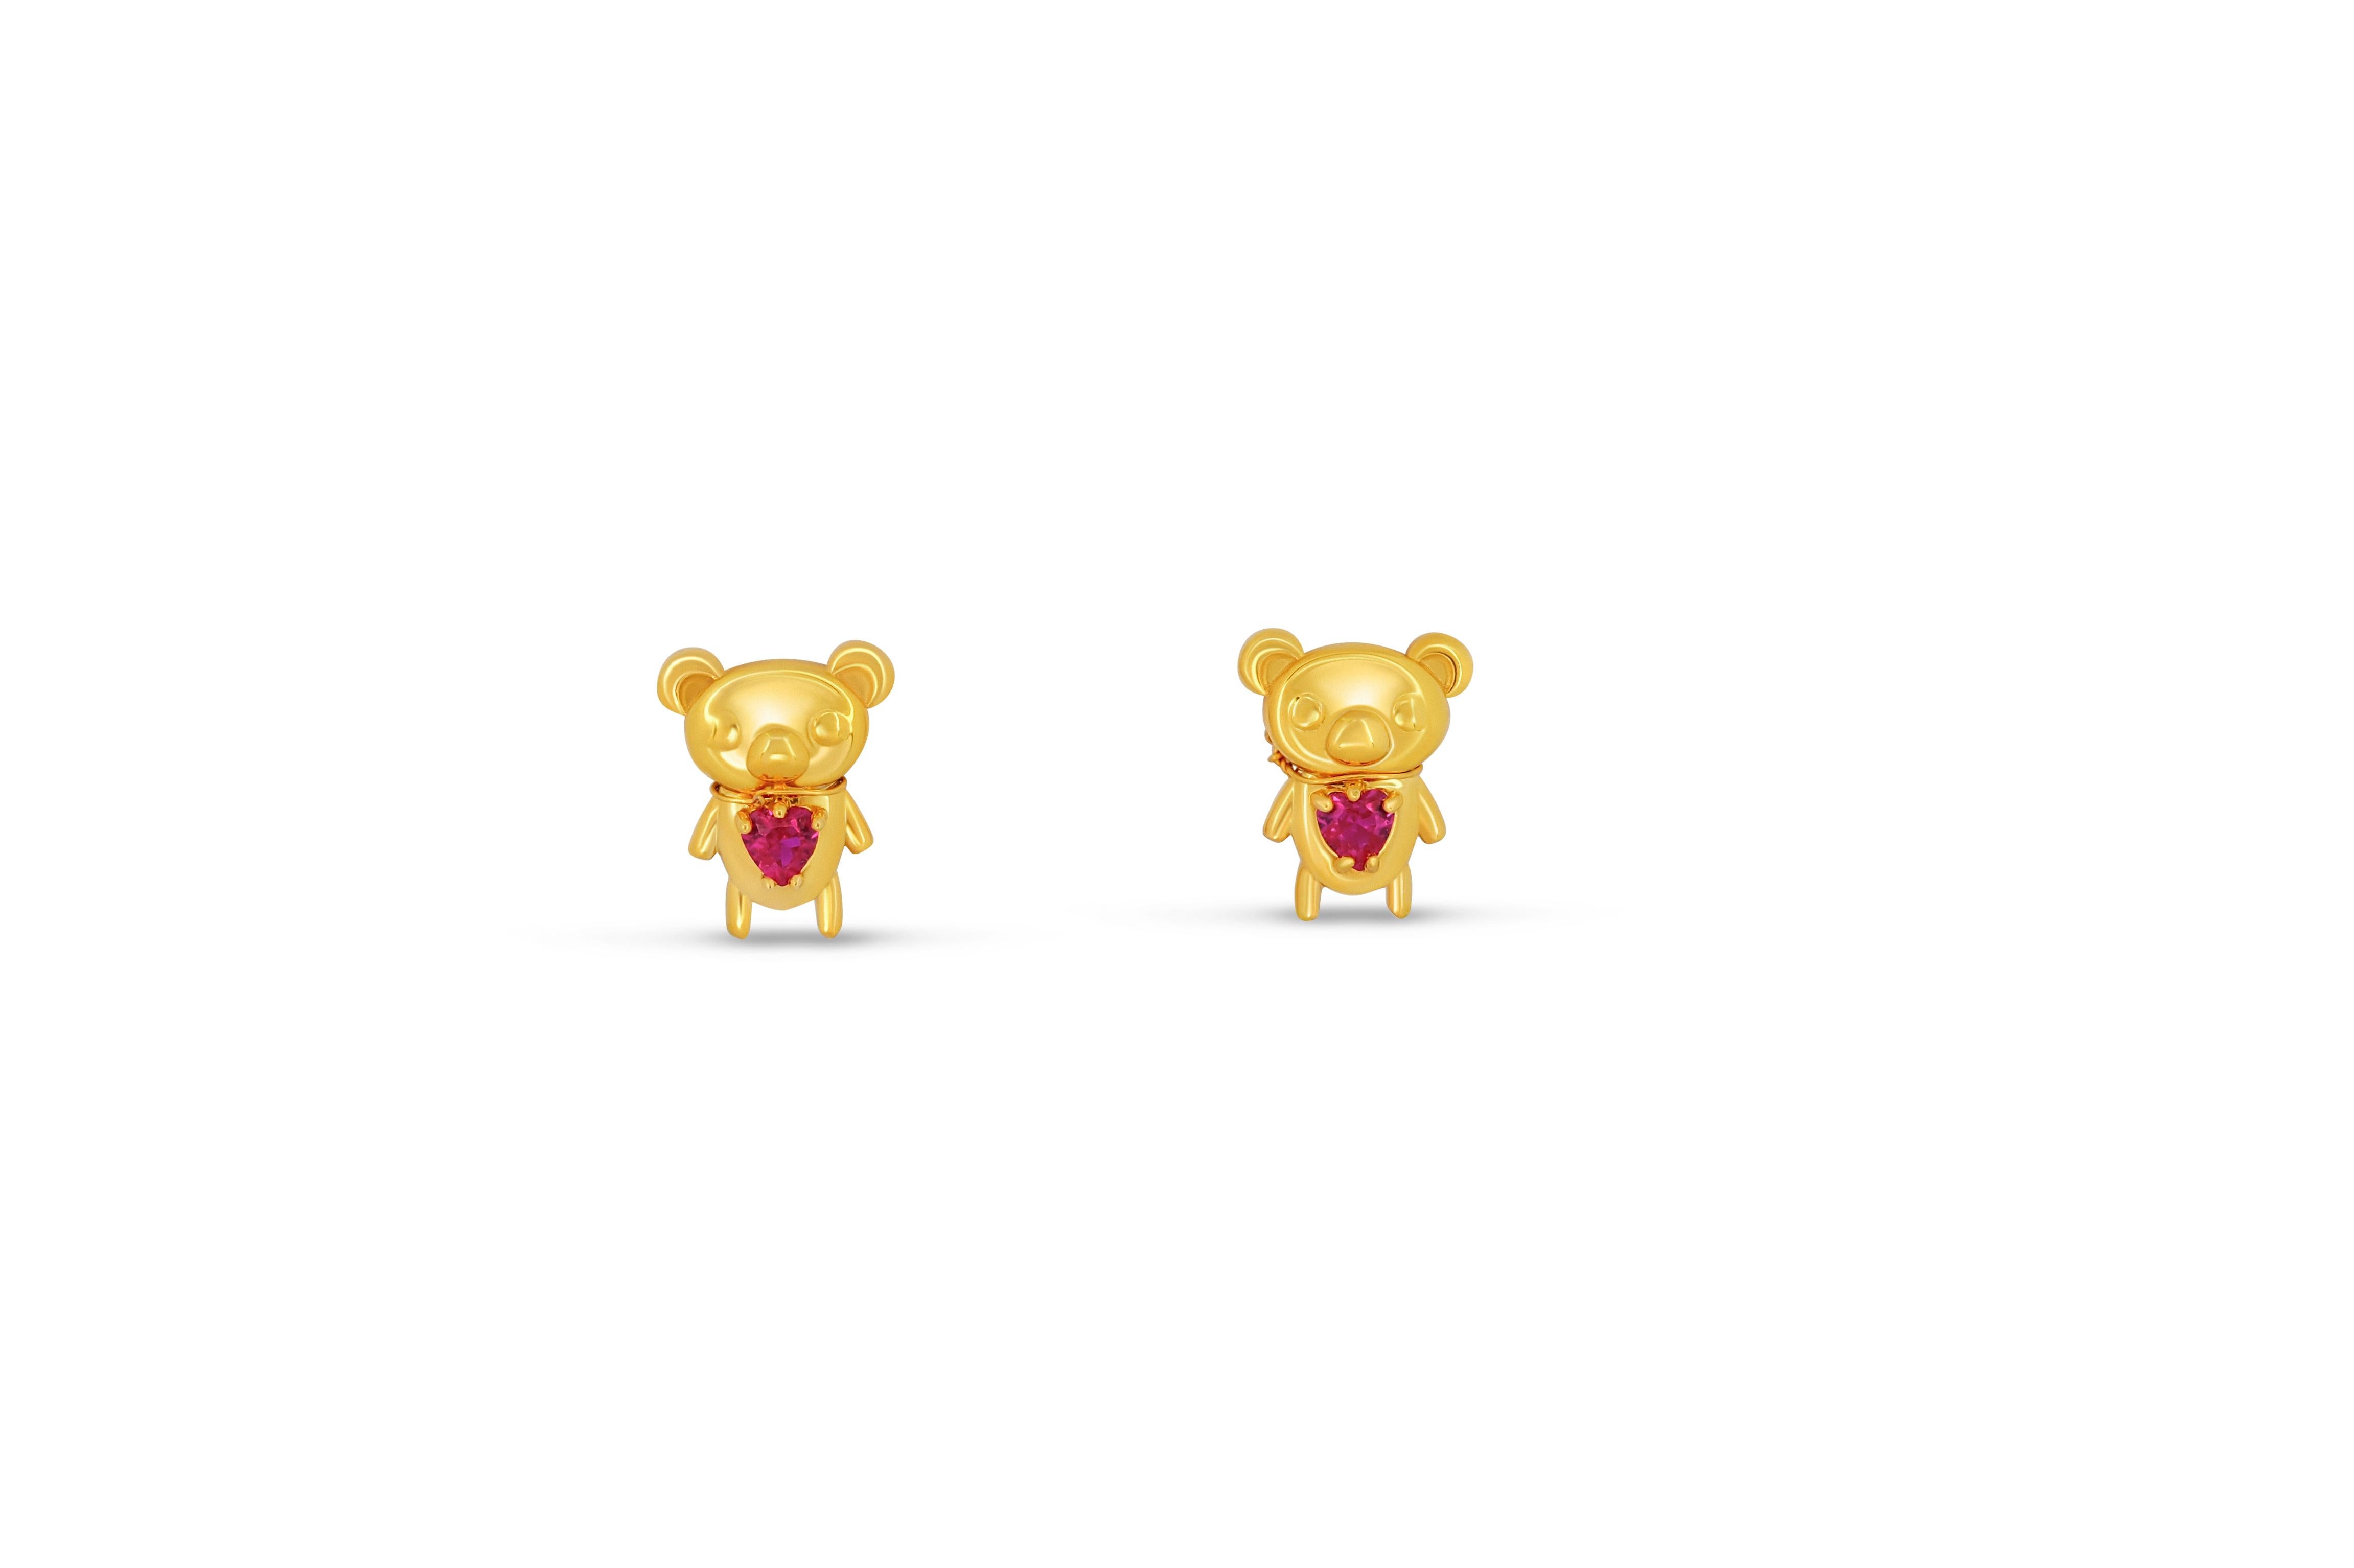 Heart Cut Teddy bear earrings studs in 14k gold. For Sale